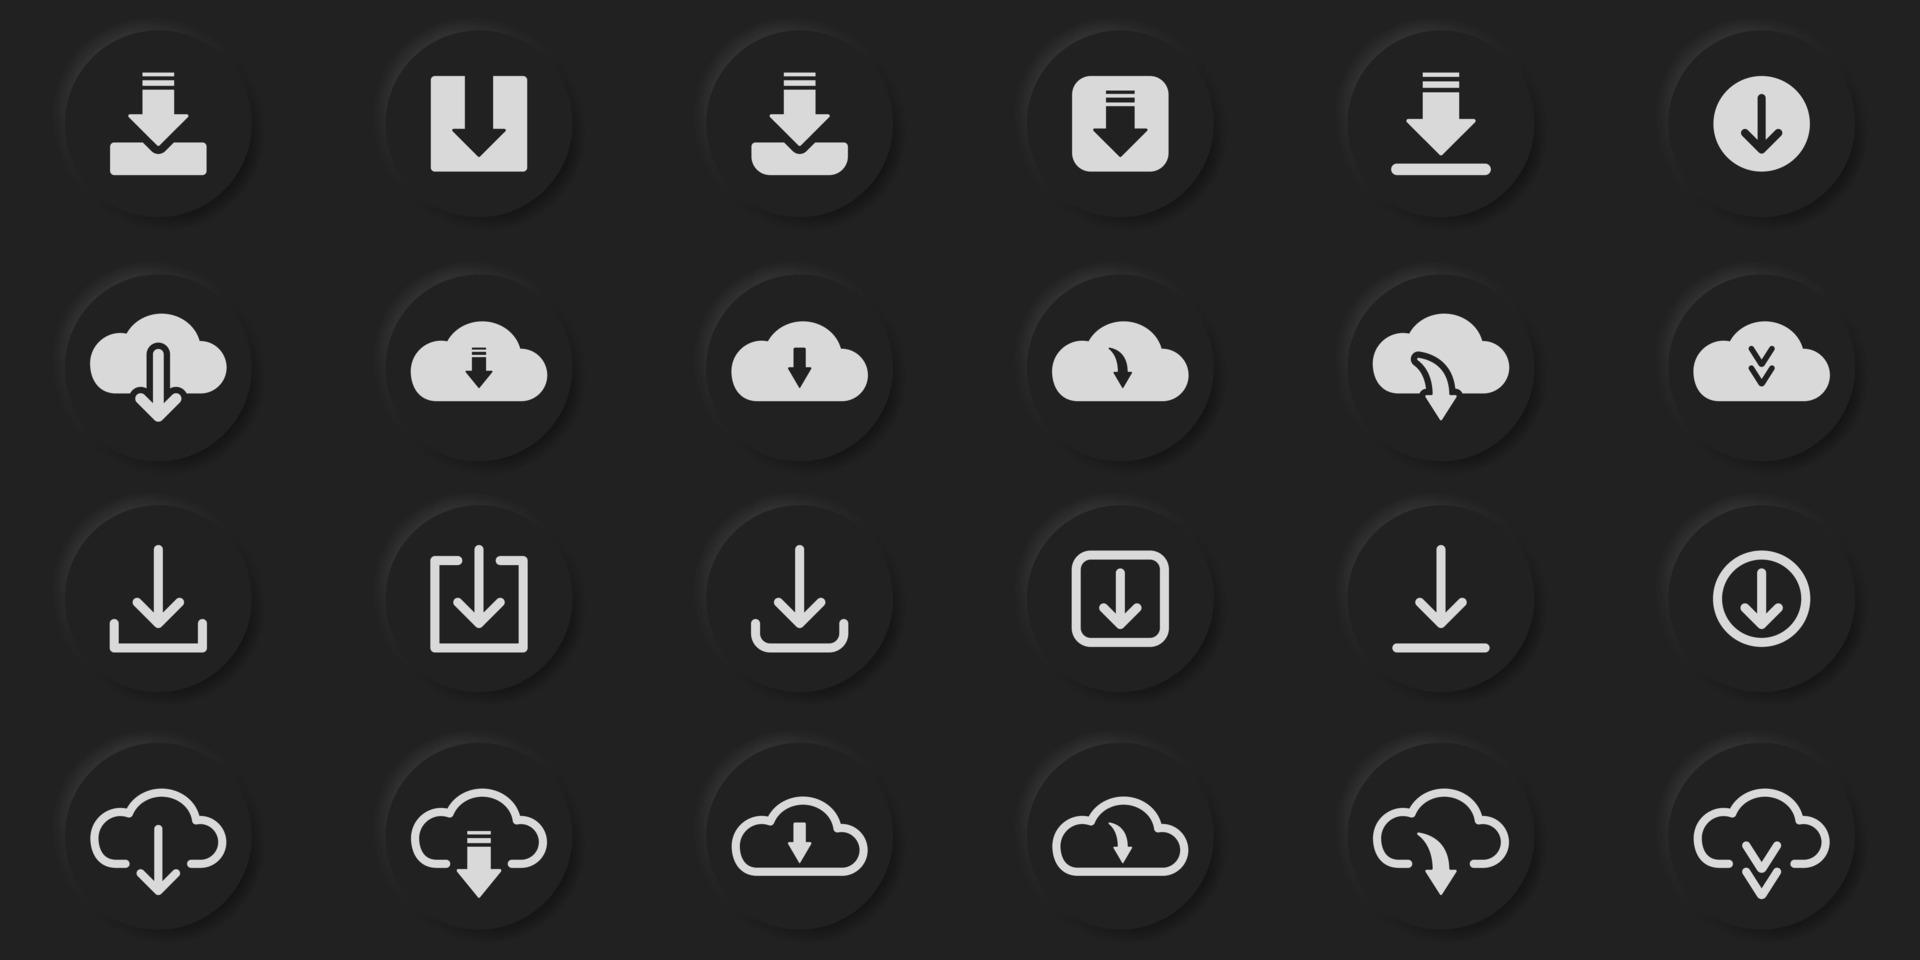 Icon tải xuống: Bạn đang tìm kiếm icon mới để làm đẹp cho màn hình điện thoại hay máy tính của mình? Icon tải xuống là giải pháp hoàn hảo cho bạn. Với nhiều icon đẹp mắt và dễ sử dụng, bạn sẽ không phải lo lắng về việc tìm kiếm icon nữa. Hãy xem hình ảnh để lựa chọn cho mình những icon yêu thích nhất.